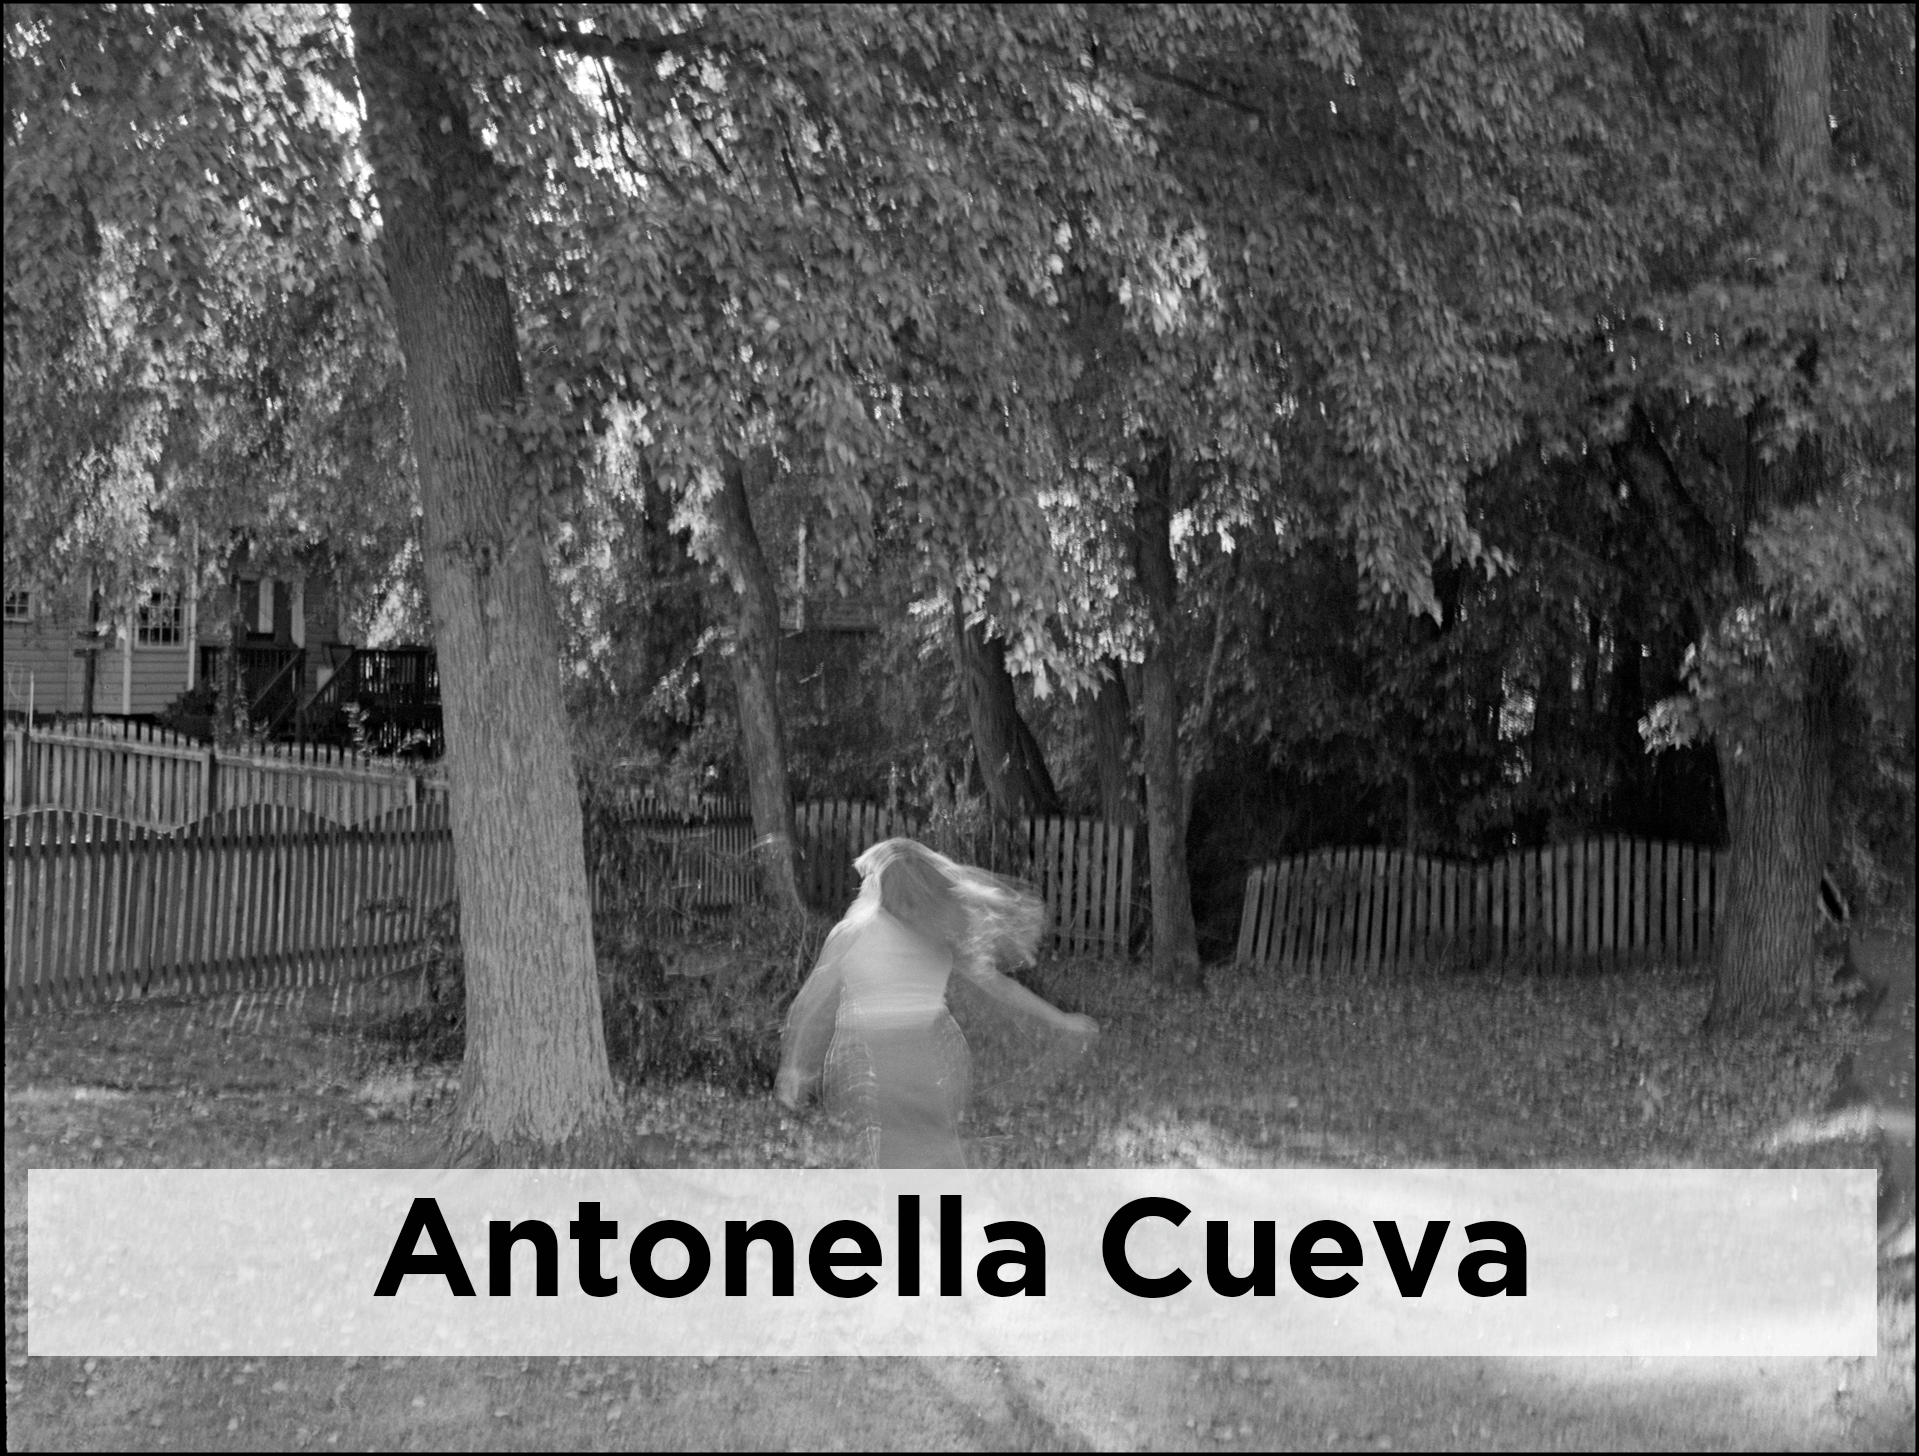 Antonella Cueva